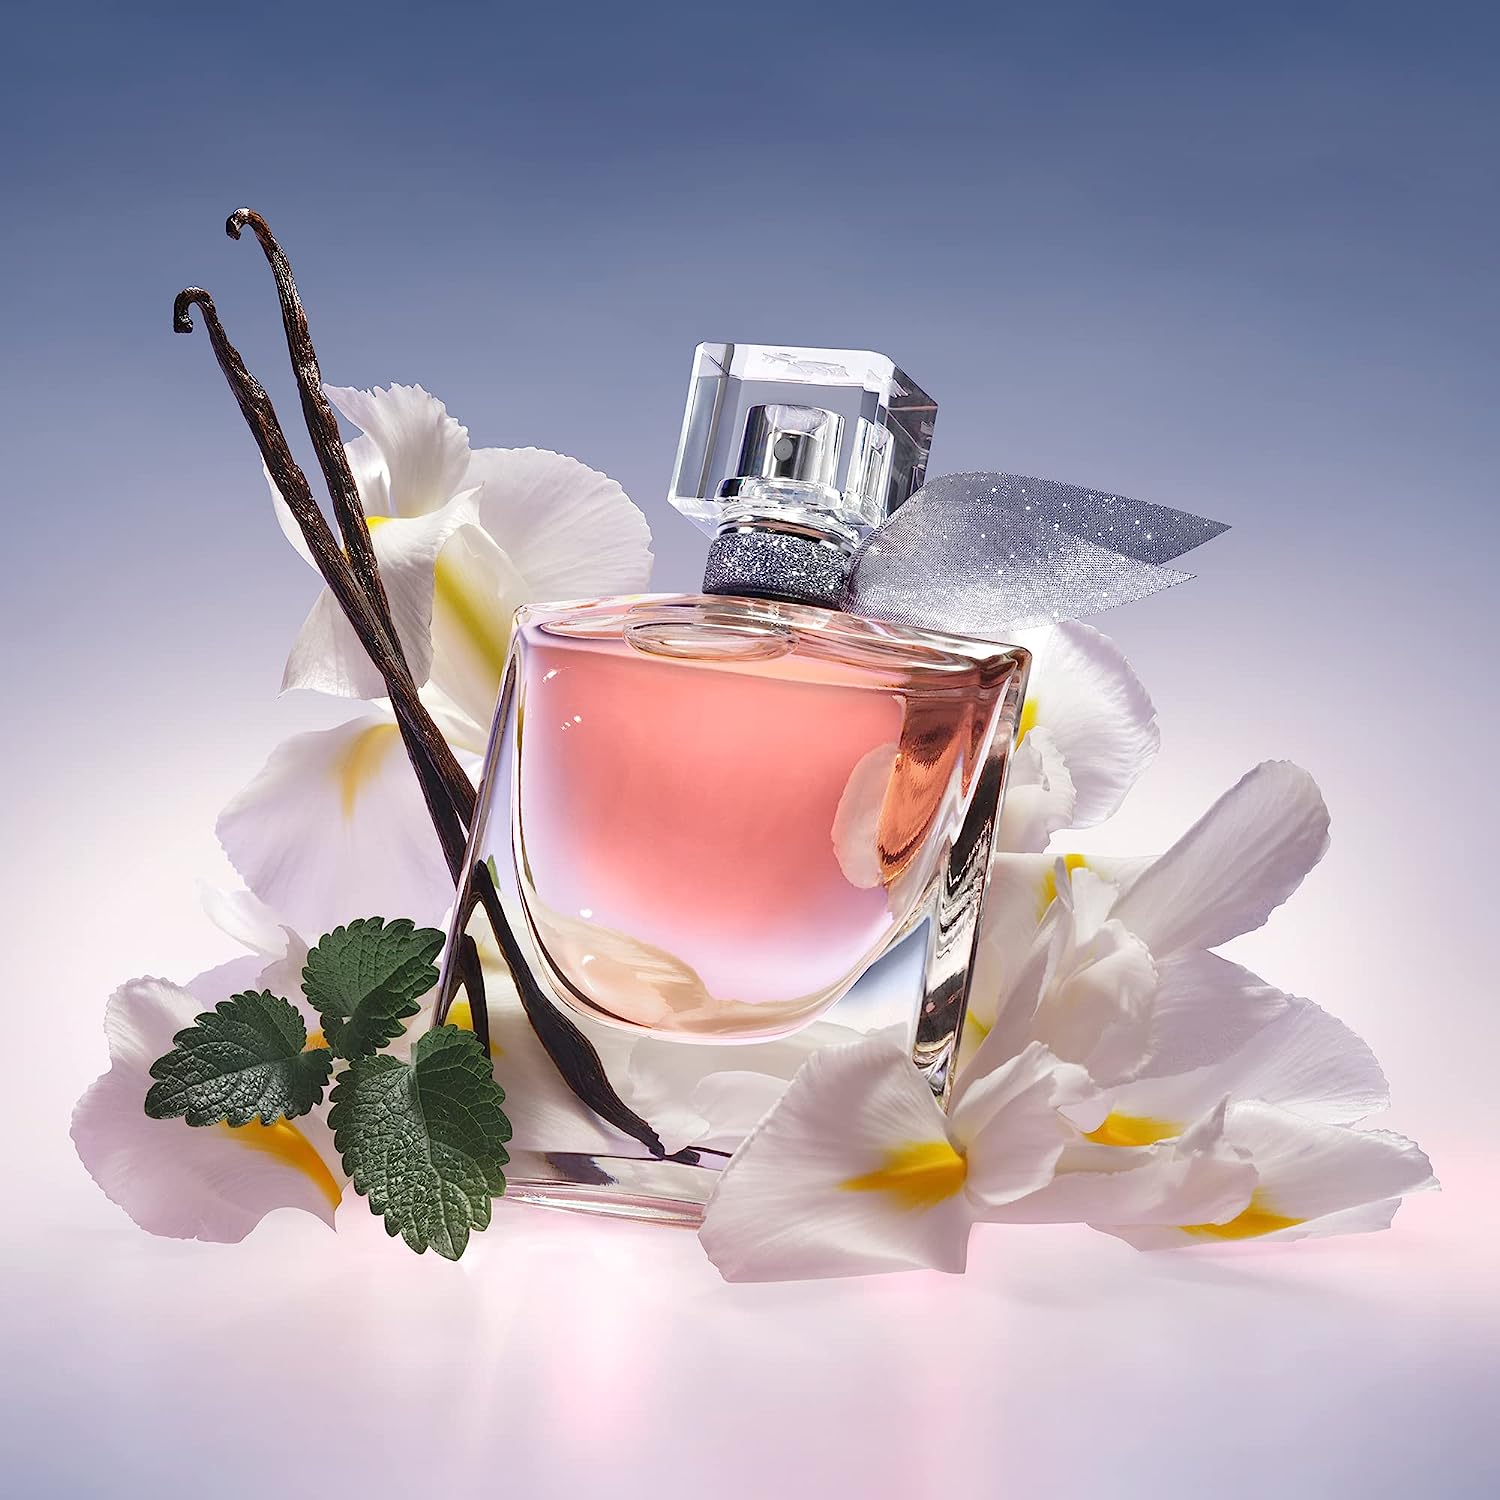 Lancôme La Vie Est Belle Eau de Parfum Refillable Duo - Floral & Sweet Women's Perfume Set Including 3.4 Fl Oz & Refill 3.4 Fl Oz : Beauty & Personal Care